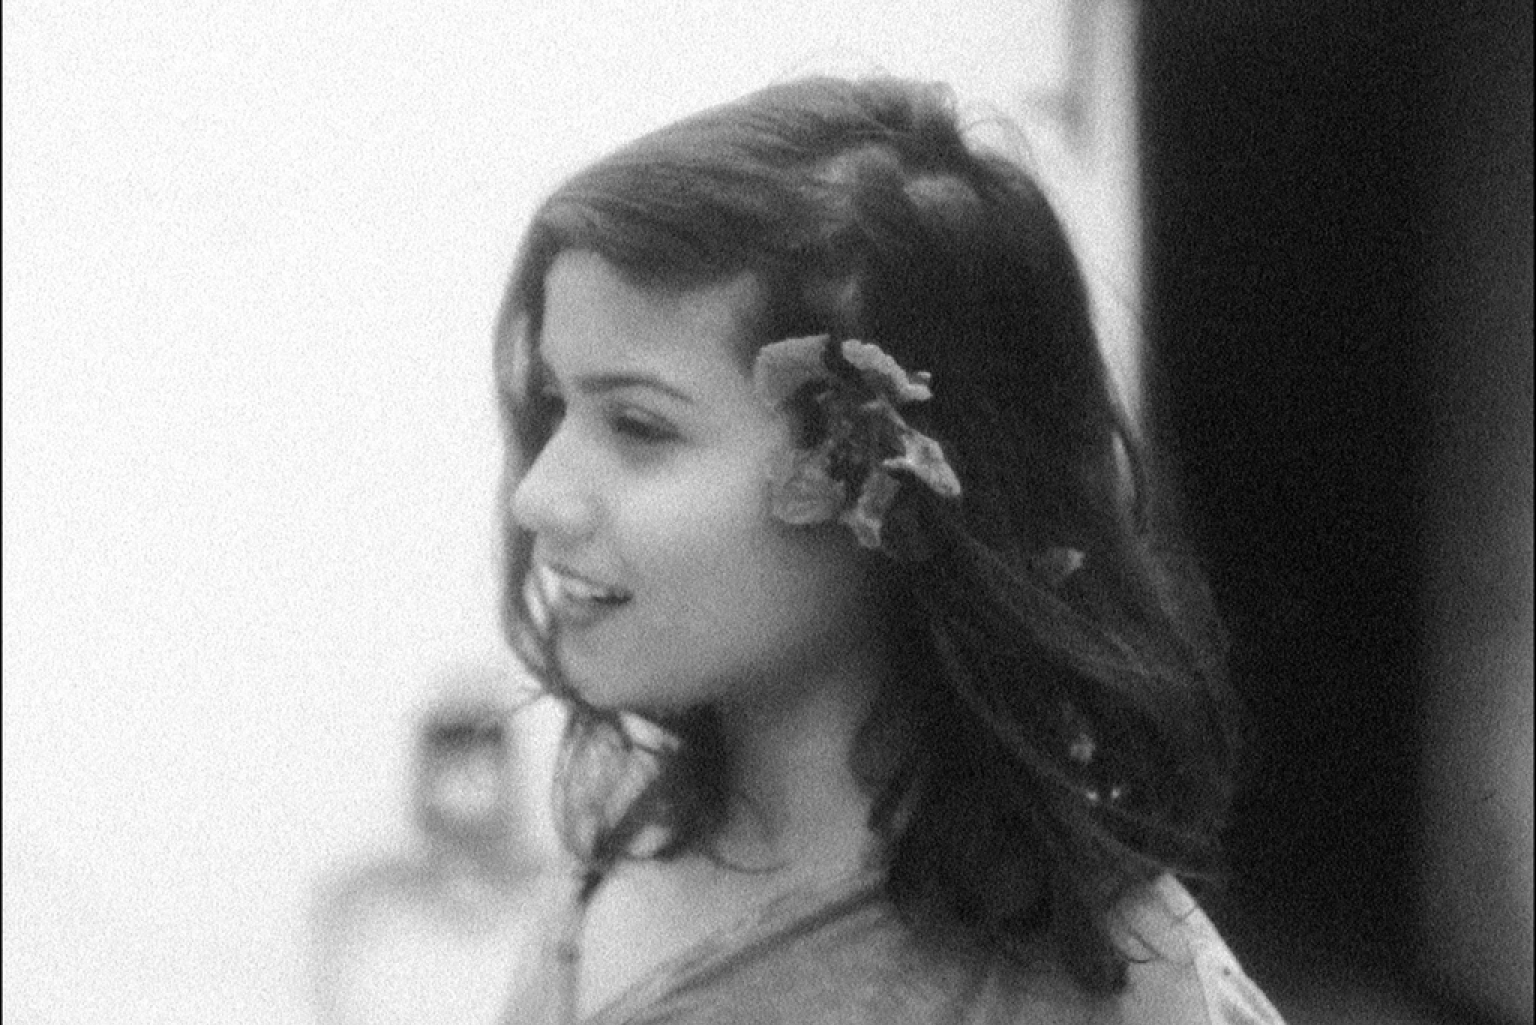 Eine schwarz-weiß Aufnahme: Eine junge Frau im Profil. Sie lächelt und hat sich eine große Blume hinter ihr Ohr gesteckt. Die schulterlangen dunklen Haare trägt sie offen.